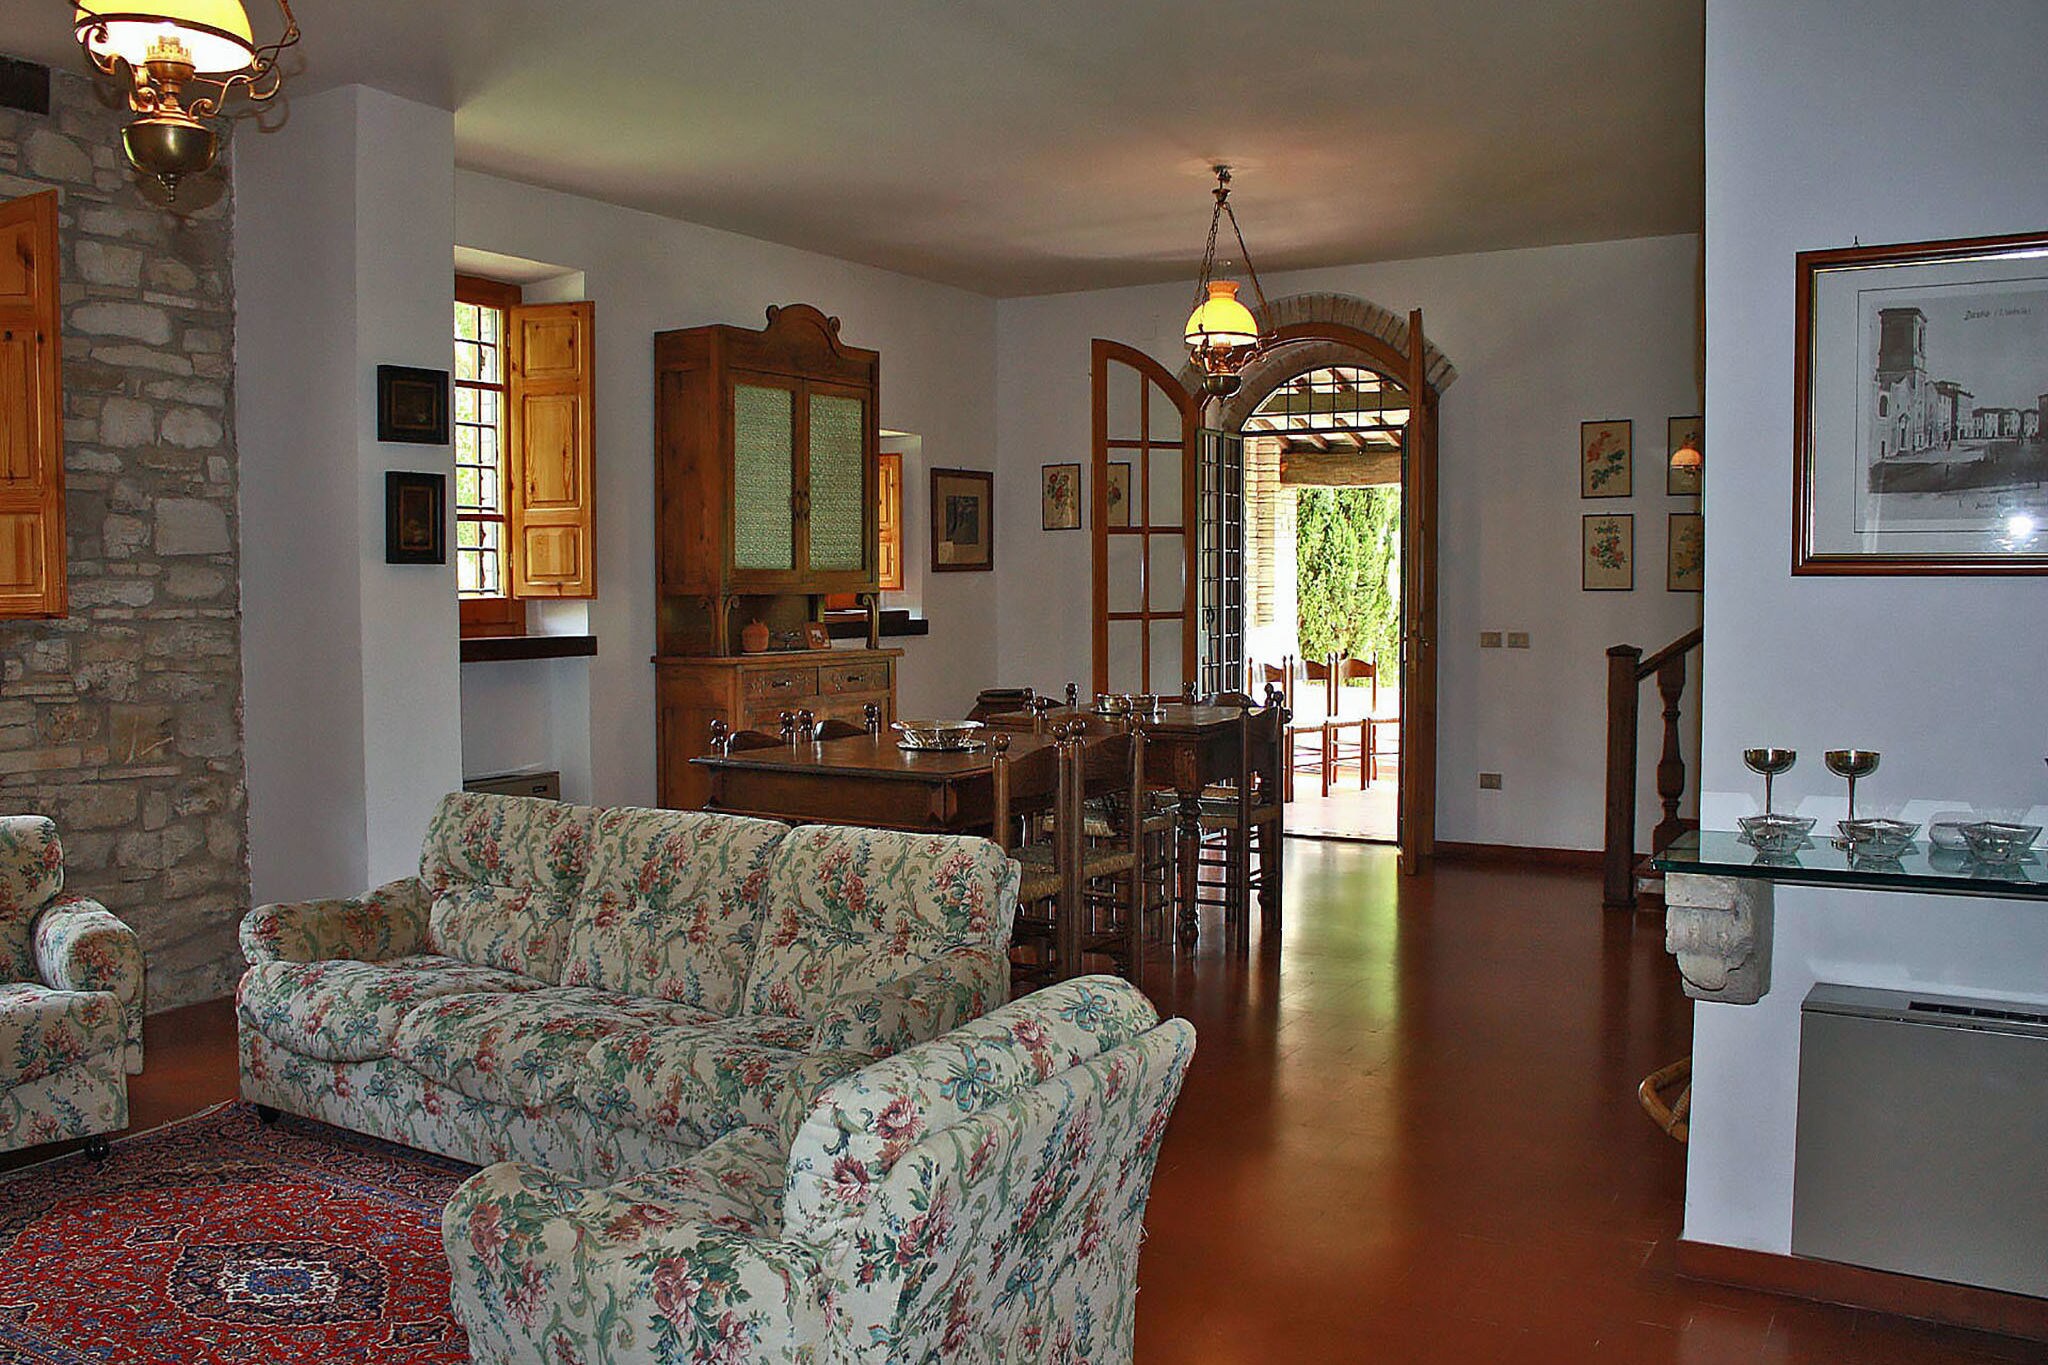 Villa à 6 km d'Assisi, Ombrie dans un environnement vallonné